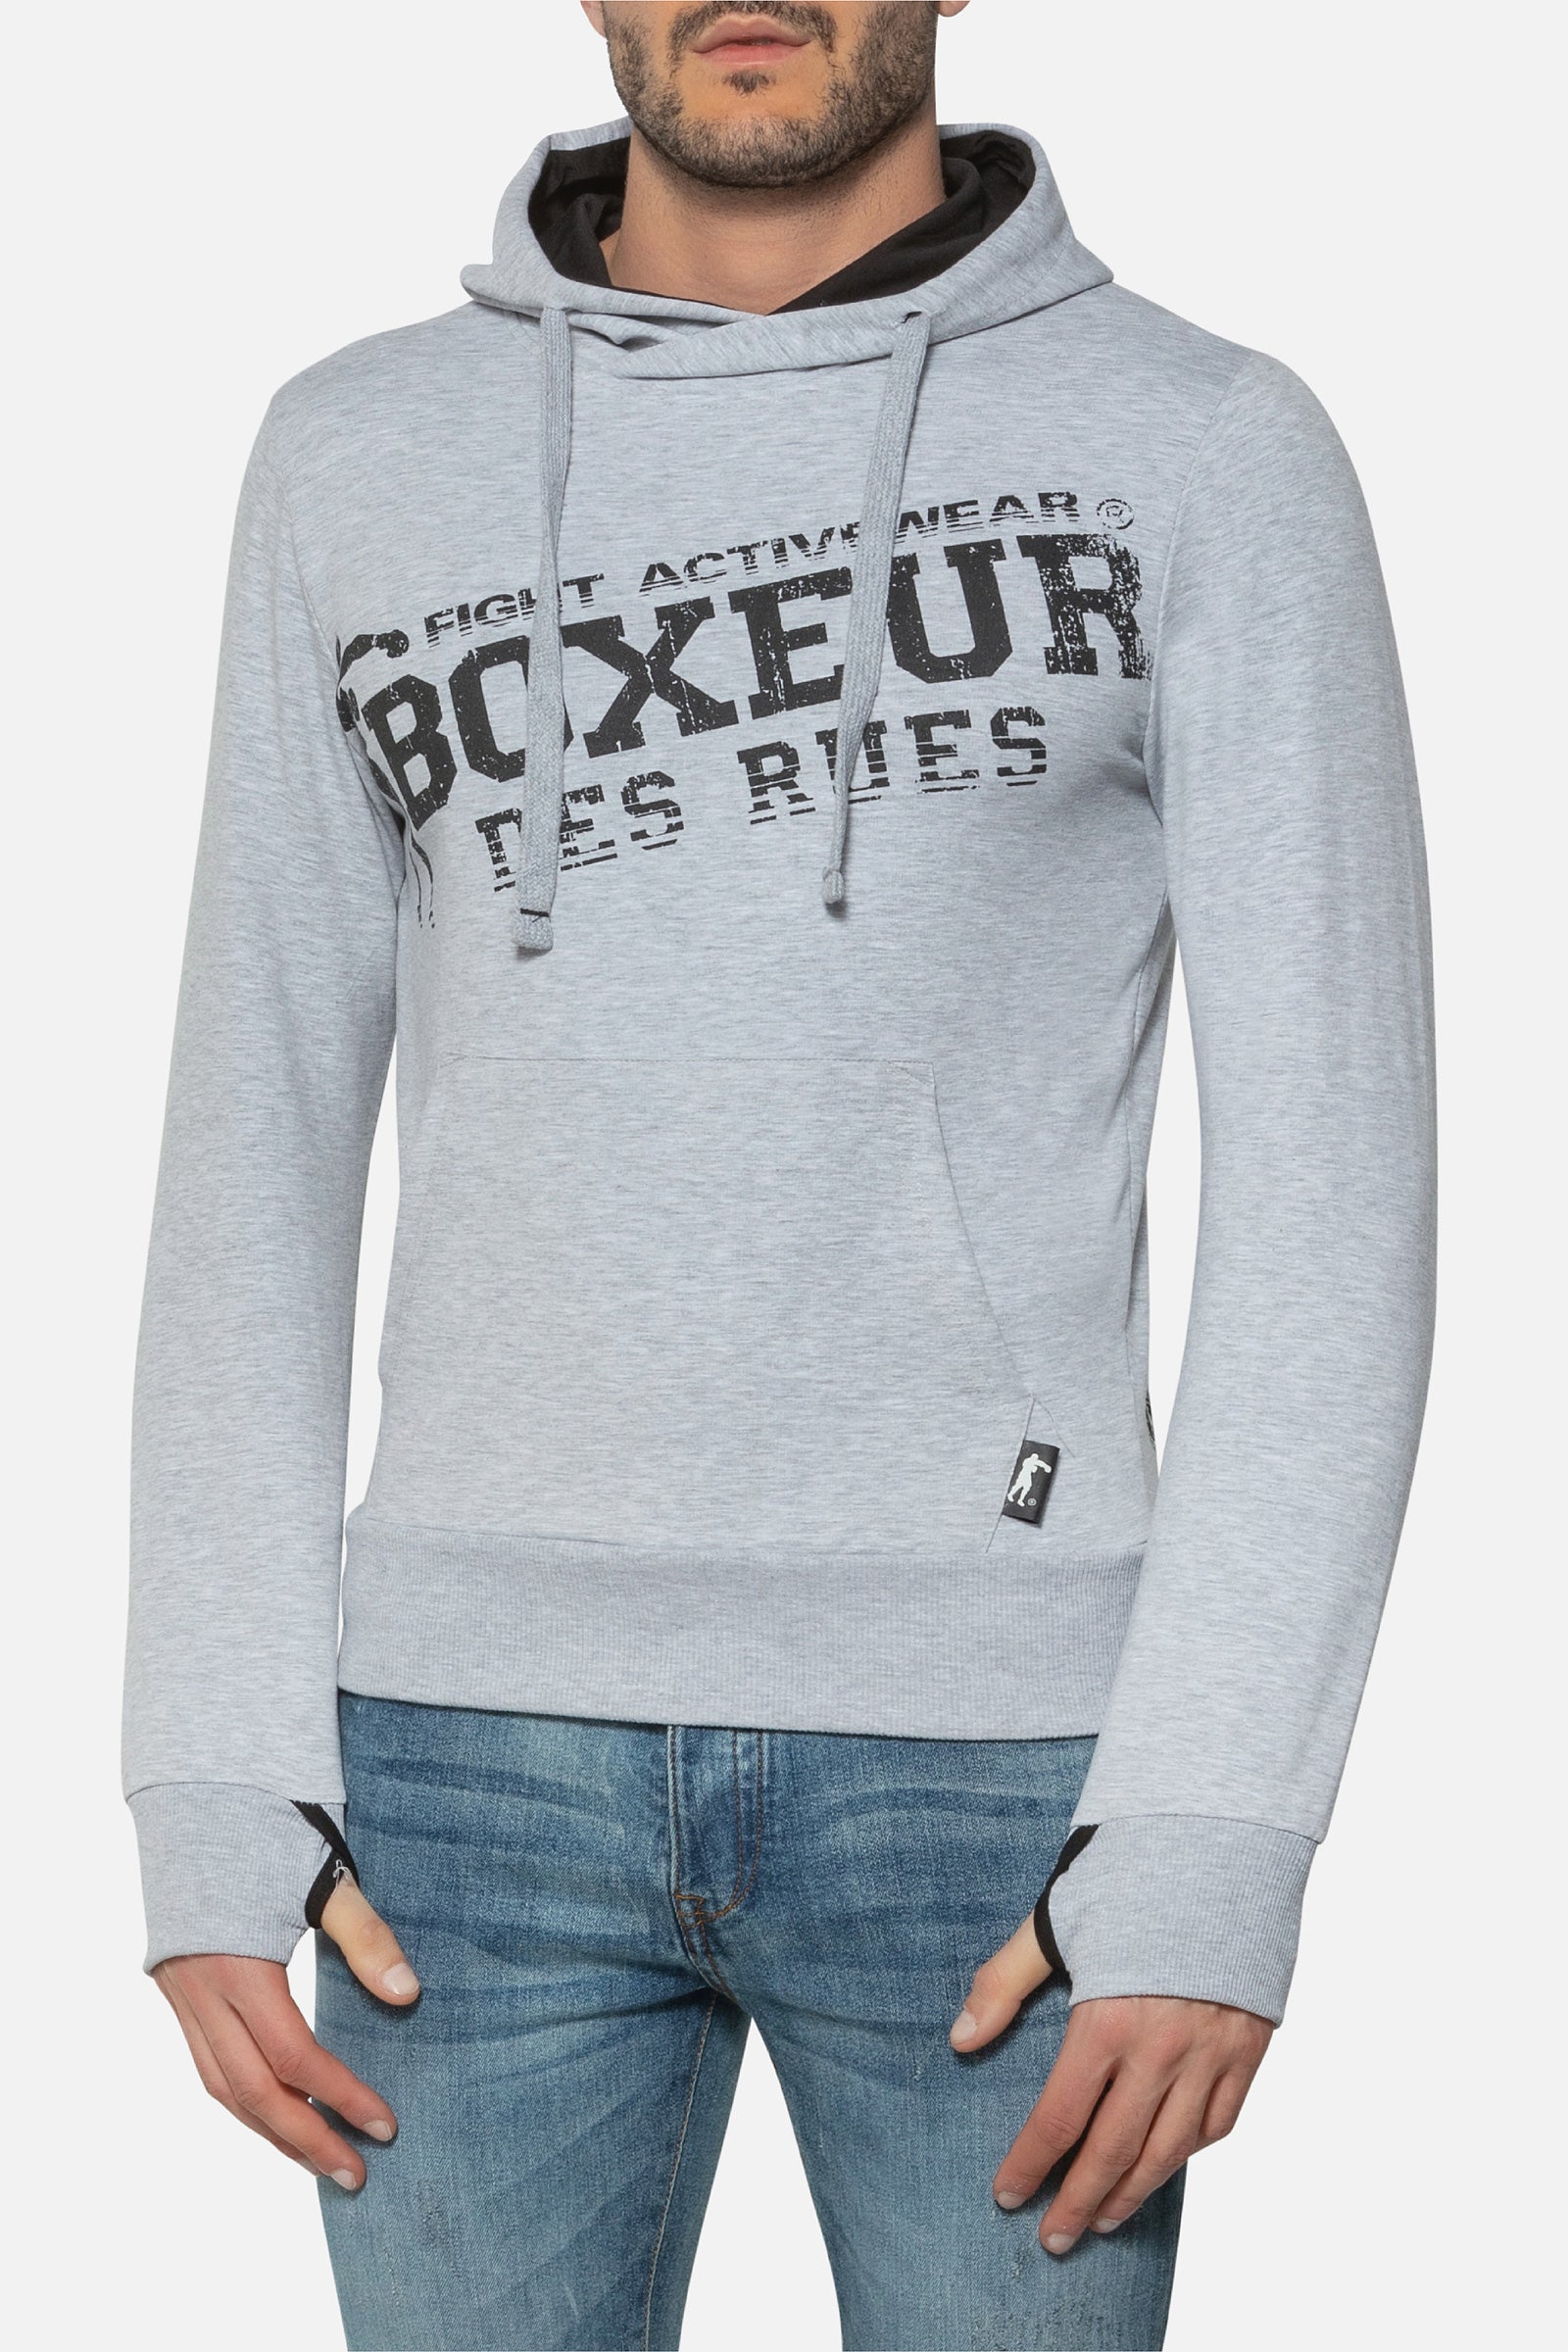 Hooded Sweatshirt with Thumb Openings in Greymel Kapuzenpullover Boxeur des Rues   